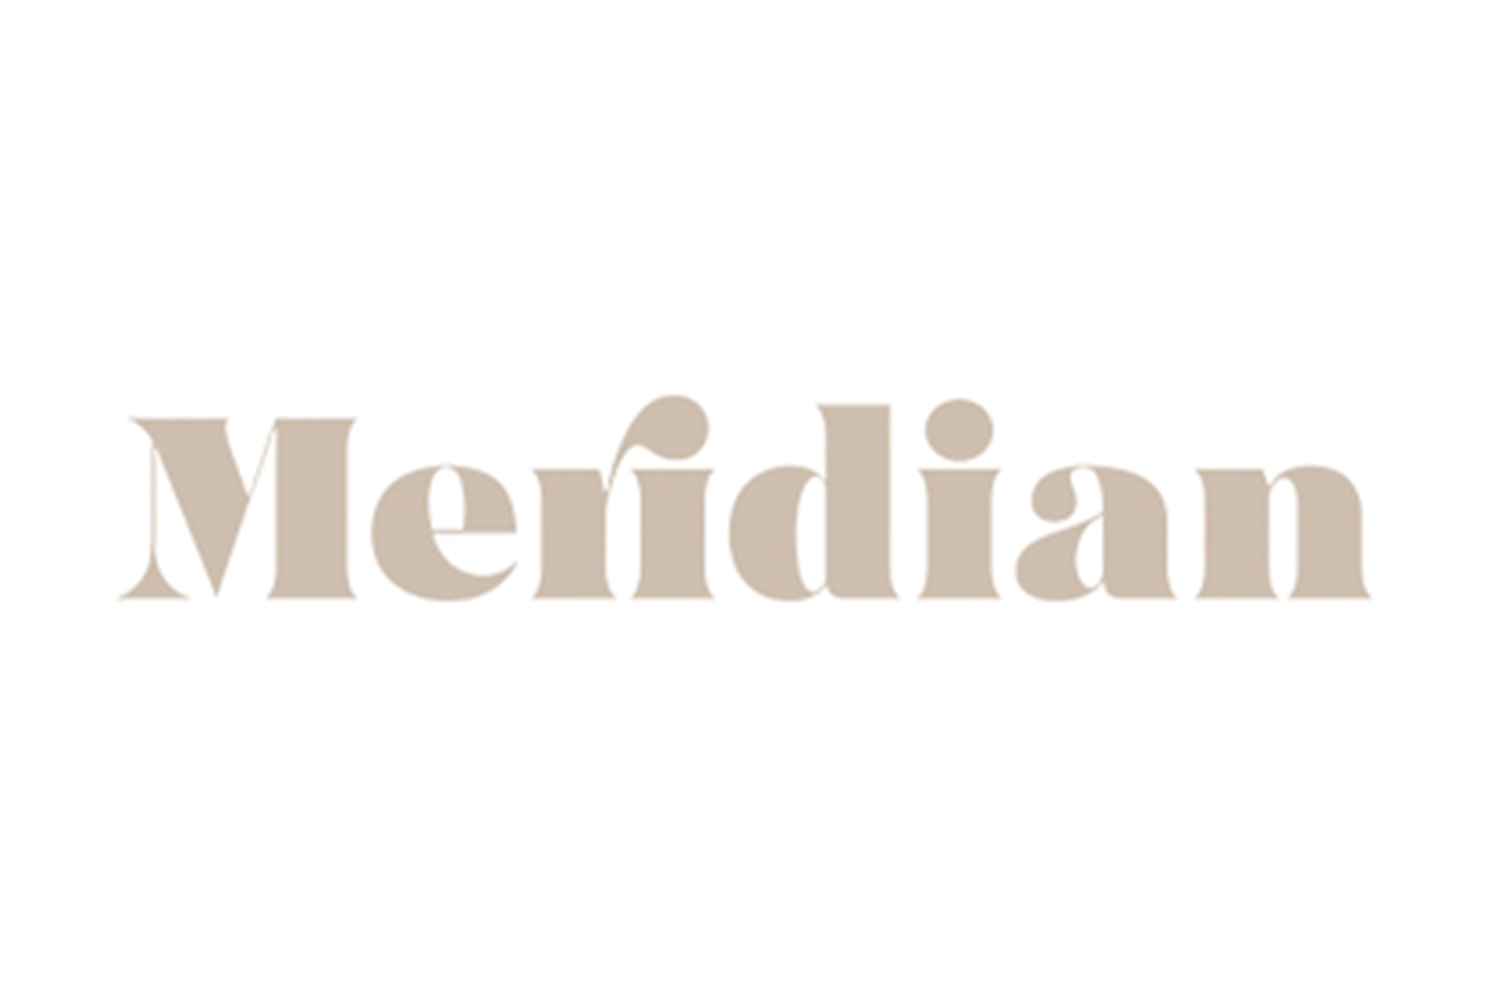 meridian-cannabis